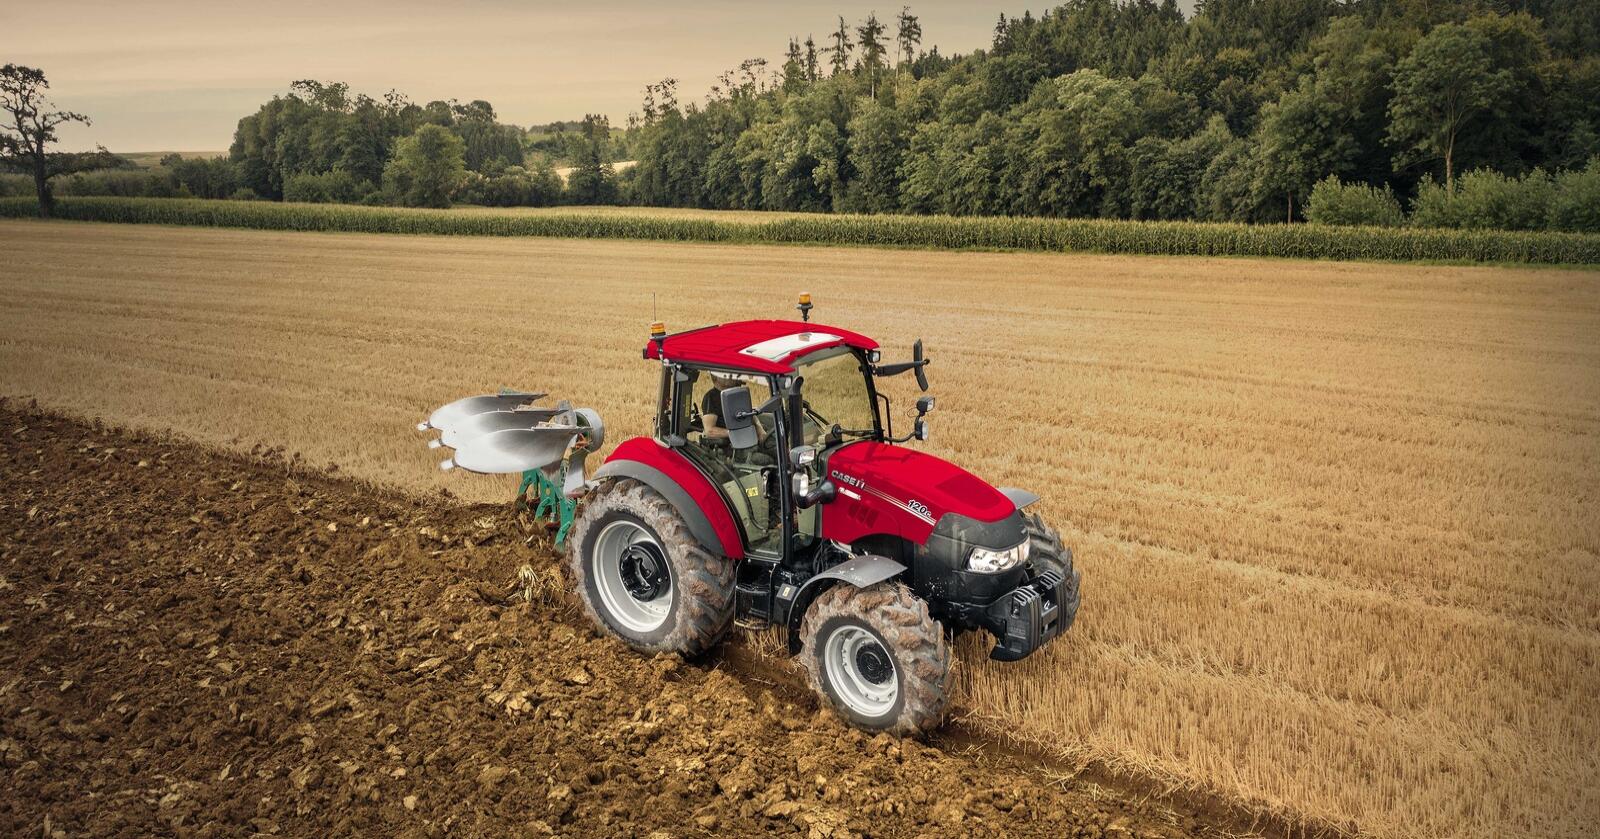 Kompakt: Case IH Farmall C er traktorer i mellomsegmentet. Nå får de nye motorer fra FPT sin F5 serie.